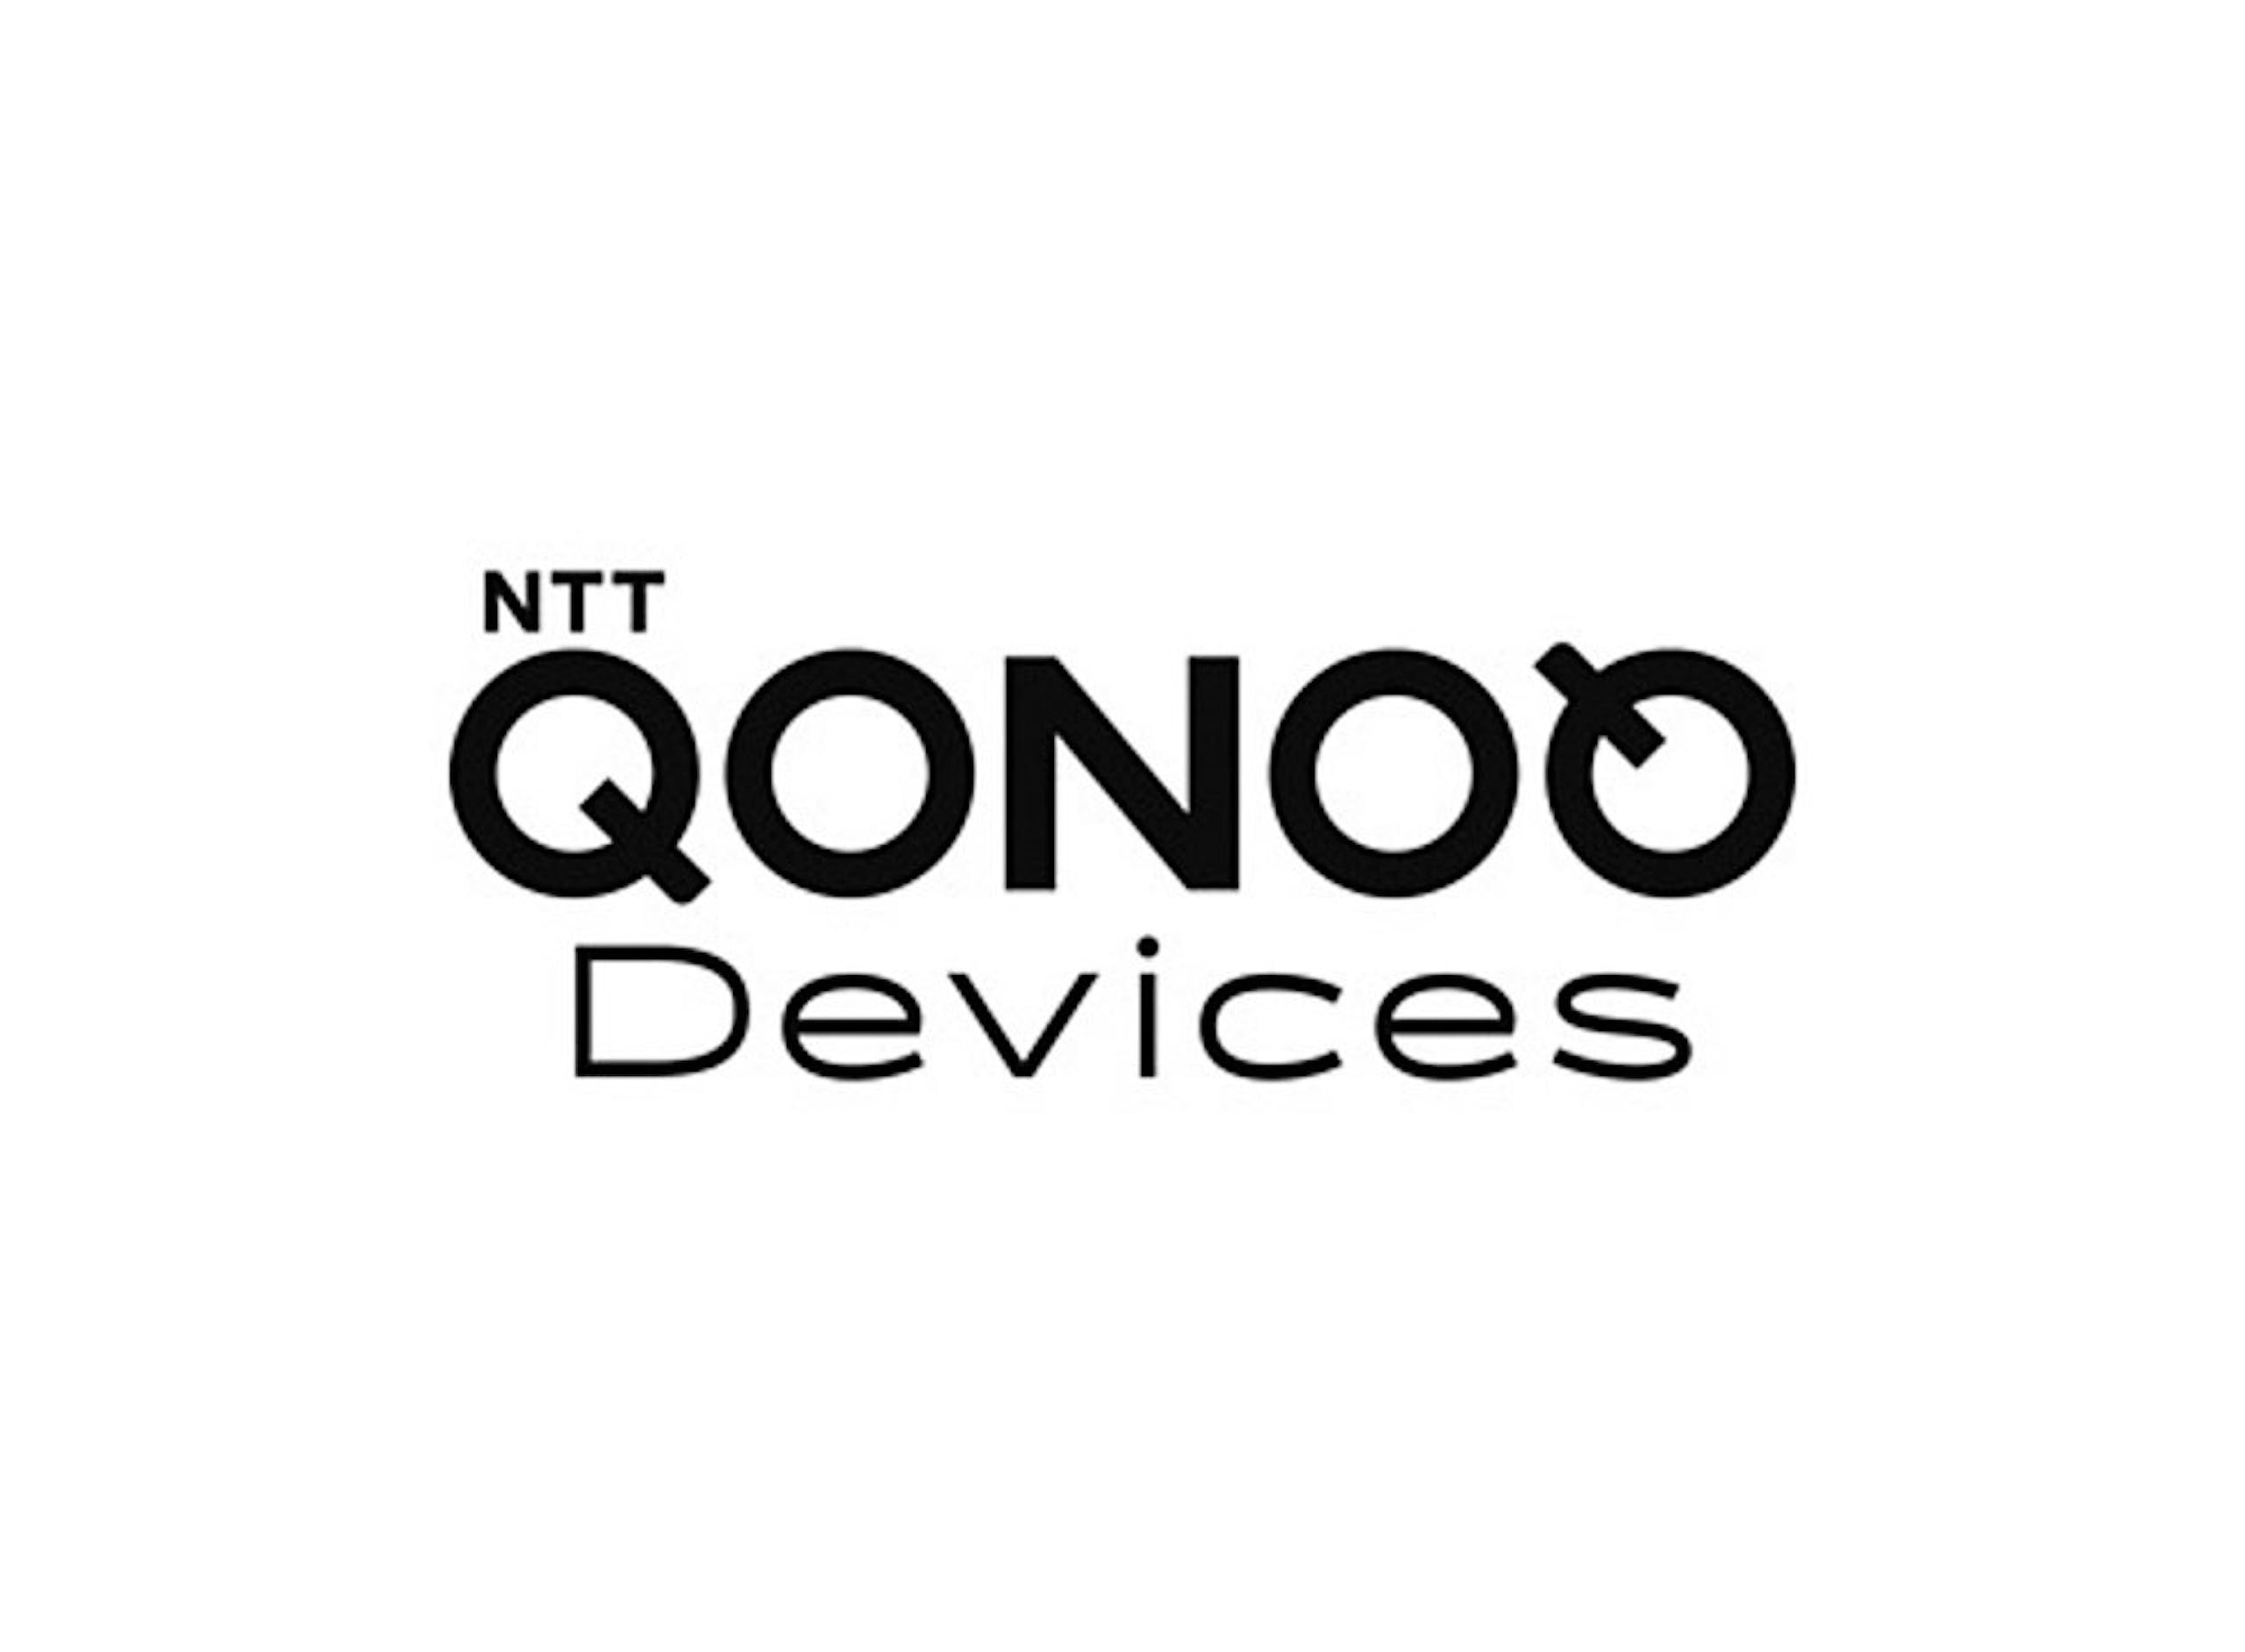 照片中提到了NTT、QONOO、Devices，跟安琪有關，包含了ntt コノキュー、日本電報電話、NTT Docomo、NTT 陽極能源公司、XR City‐新感覚街あそびアプリ